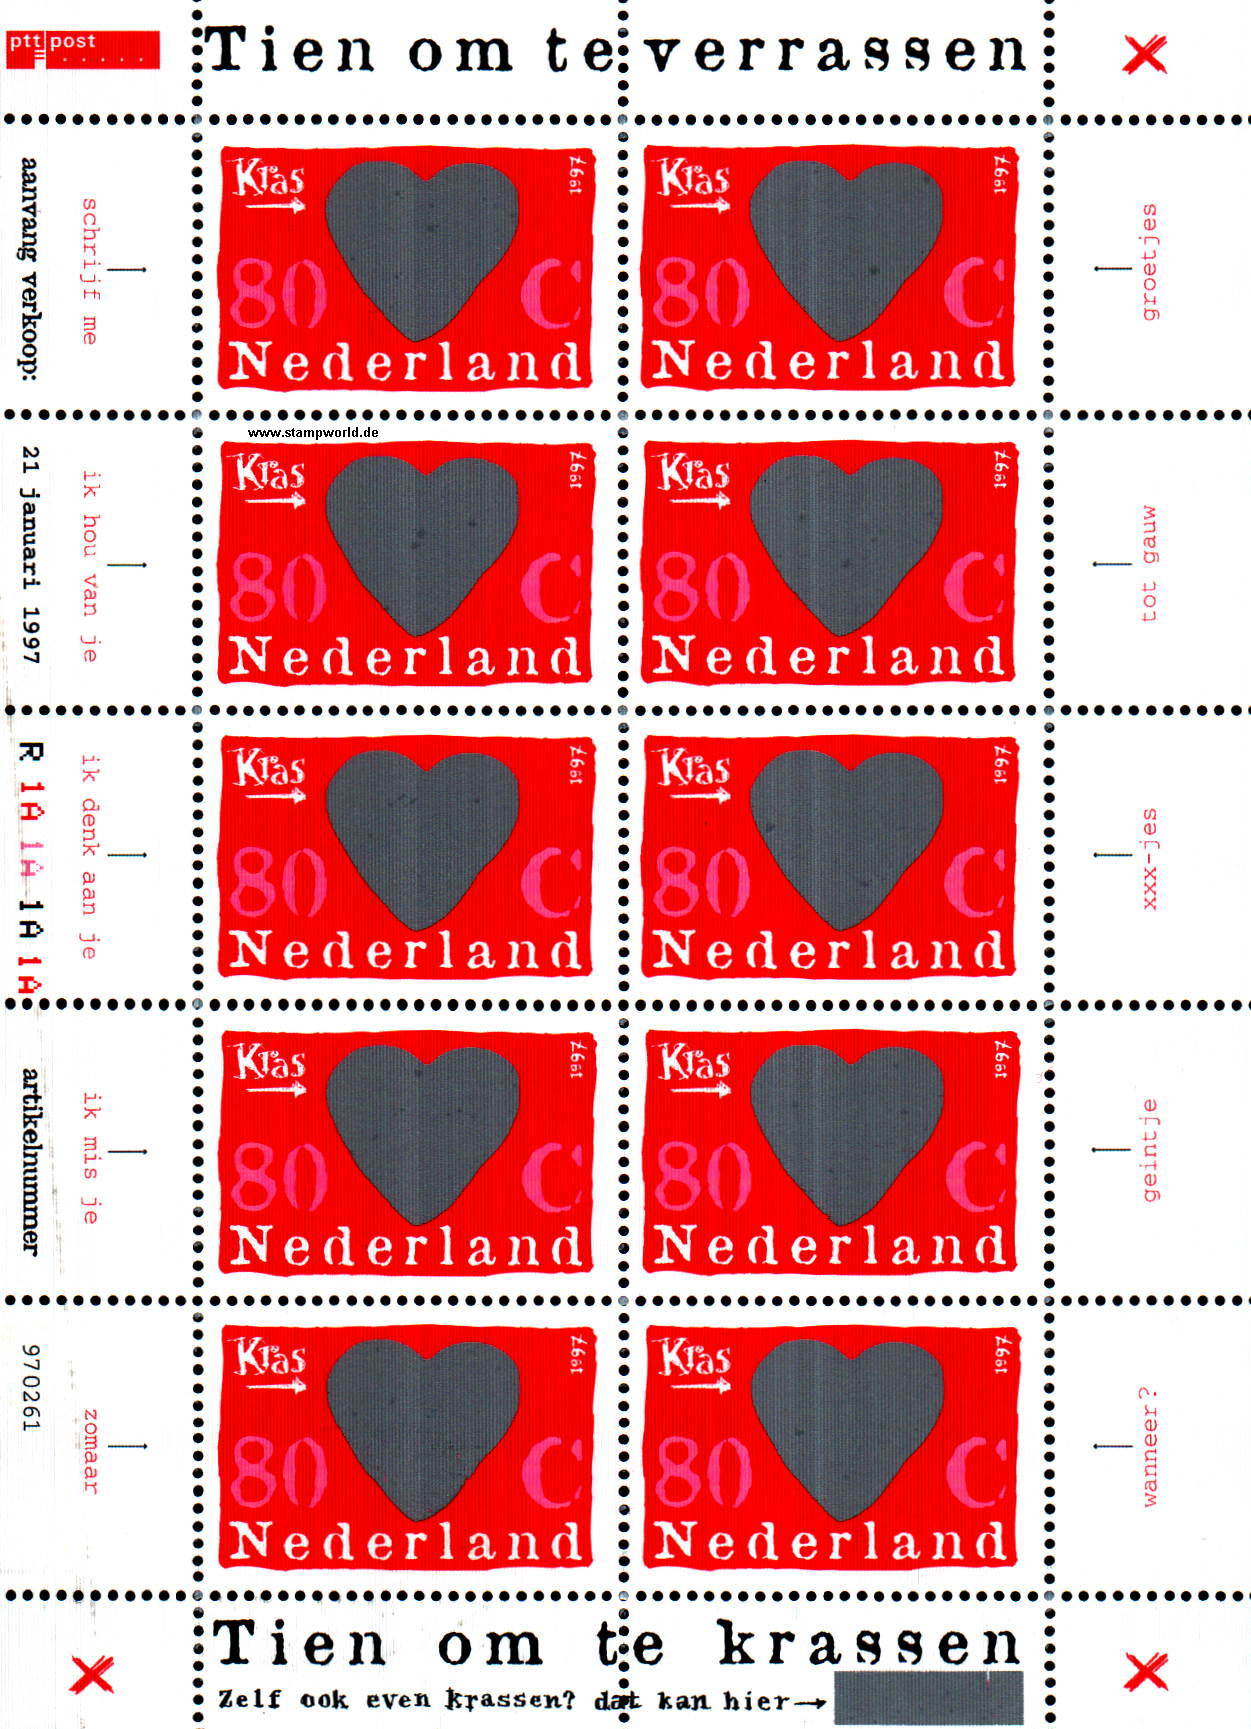 Briefmarken/Stamps Grußmarken/Überraschung/Herz (Rubbelmarken)